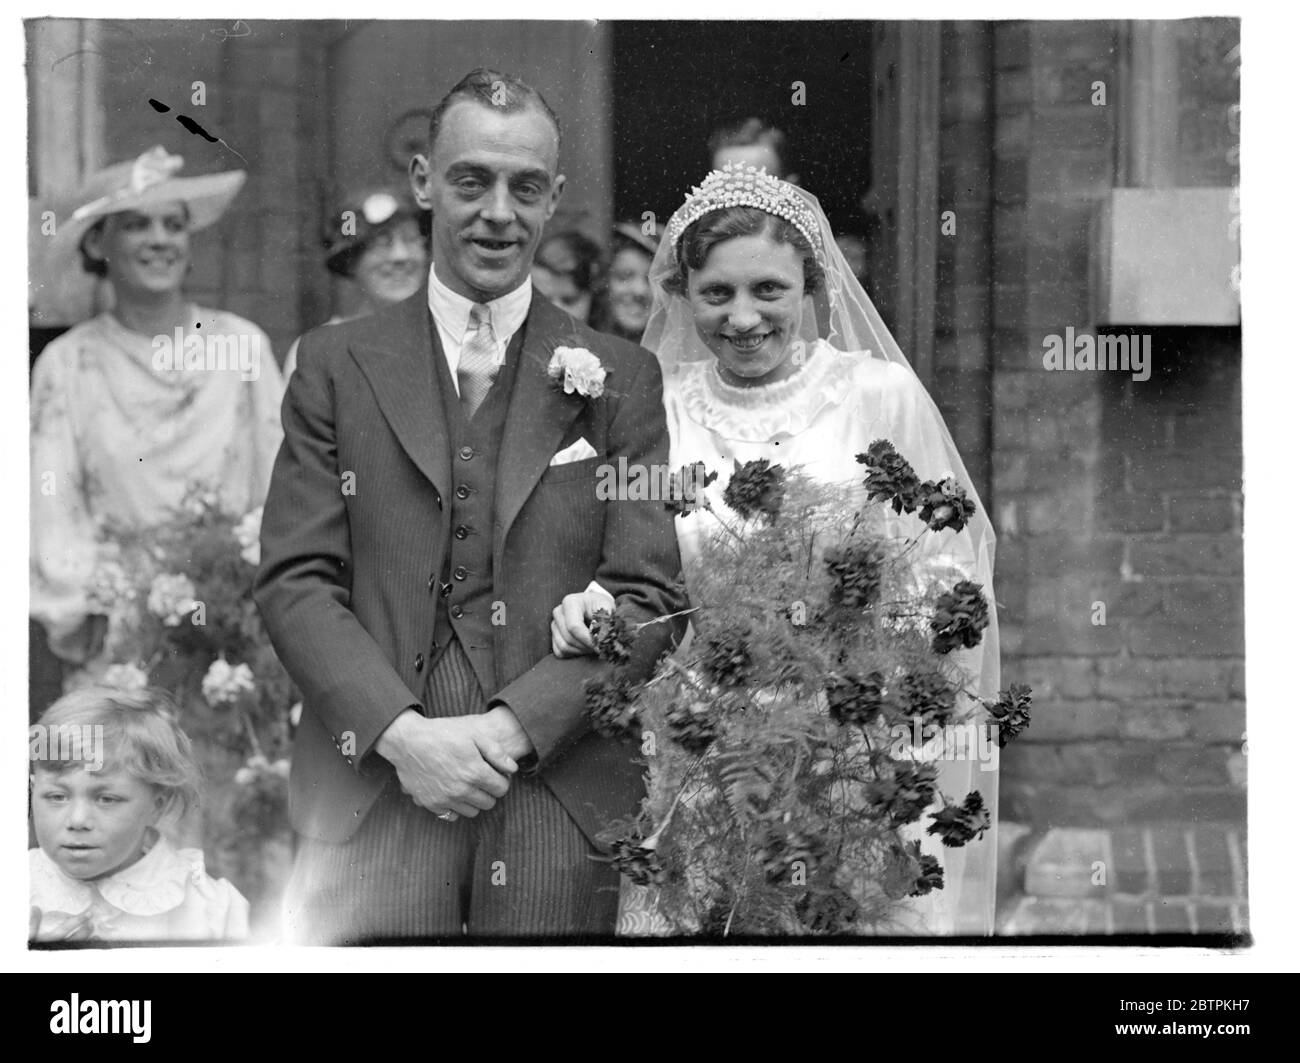 Ihr Ziel Erreicht ! Fulham 'Keper Weds in London Alfred Toothill, der Fulham Torwart, war verheiratet in St. Clement ' s Kirche, Fulham, Miss Georgina Farley. Tootill kommt aus Bury, Lancashire. Seine Braut ist ein Londoner. Foto zeigt : die Braut und Bräutigam . 23 Mai 1936 Stockfoto